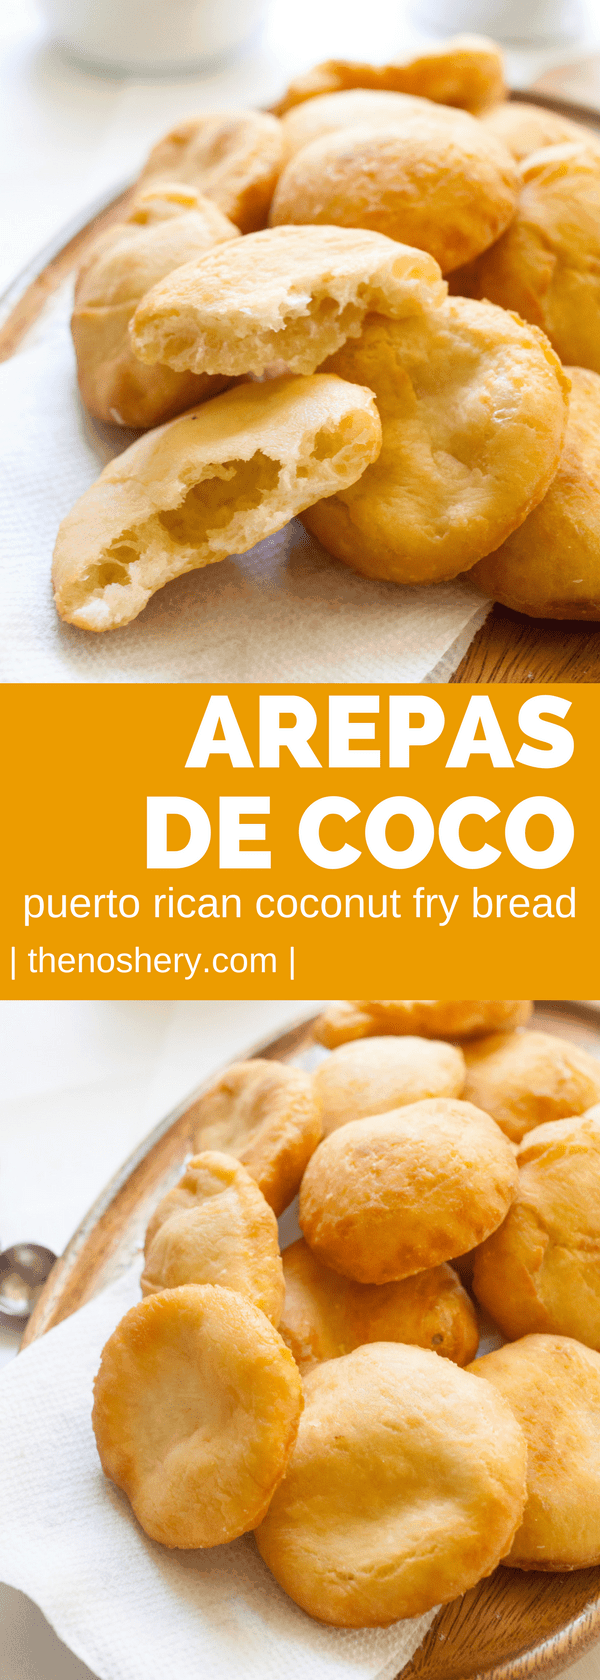 Arepas de Coco (Puerto Rican Coconut Fry Bread) - The Noshery